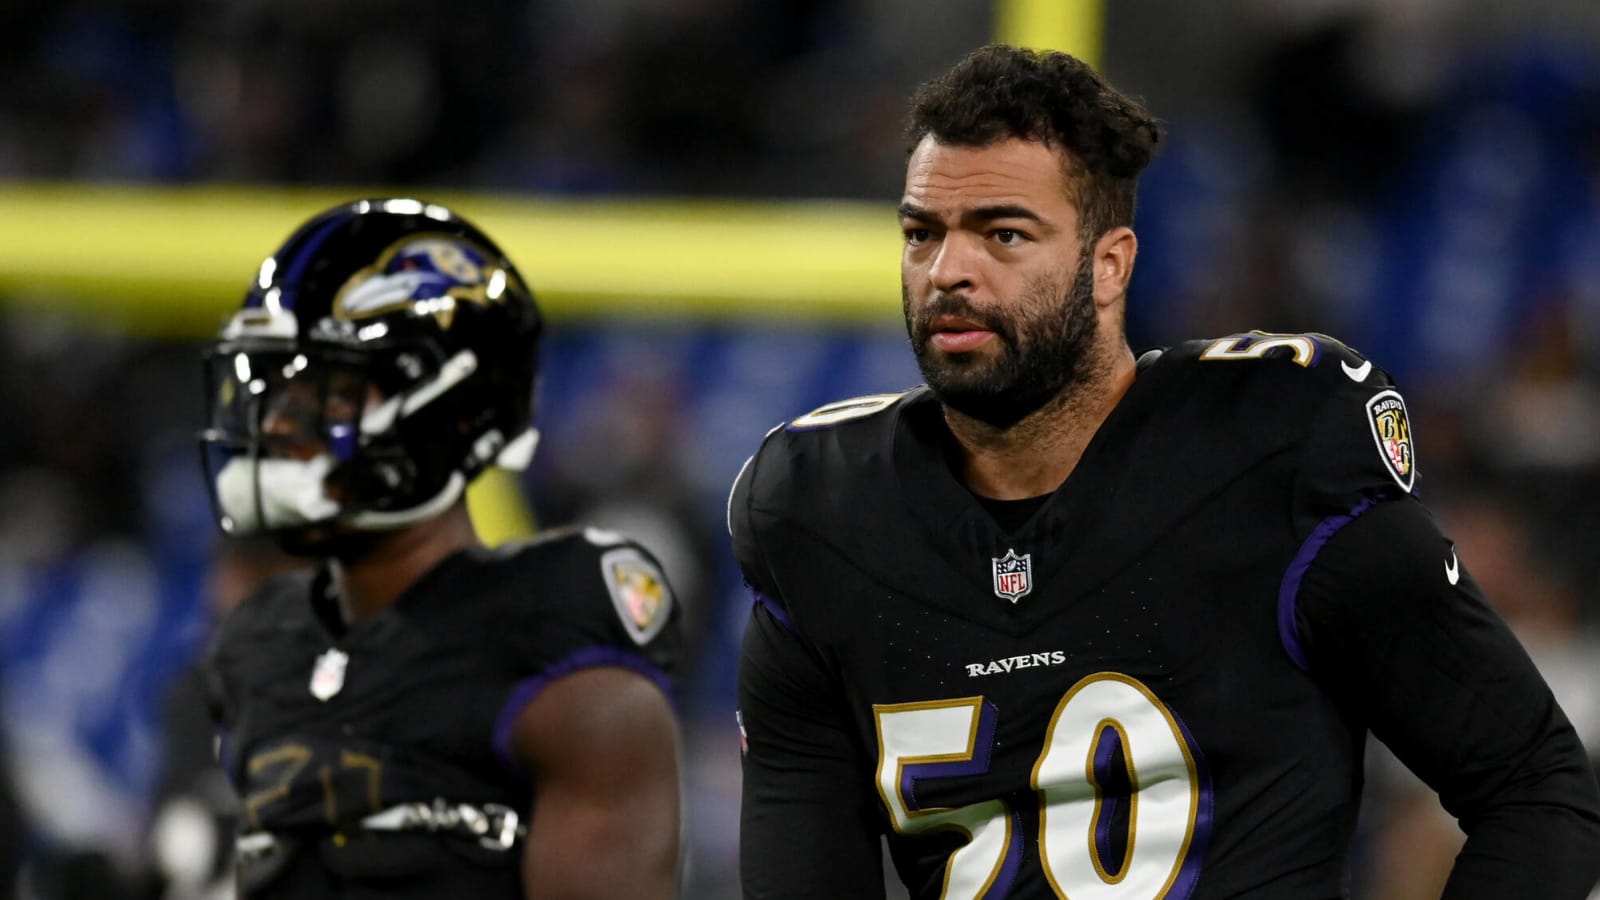 Ravens bringing back two-time Super Bowl champion